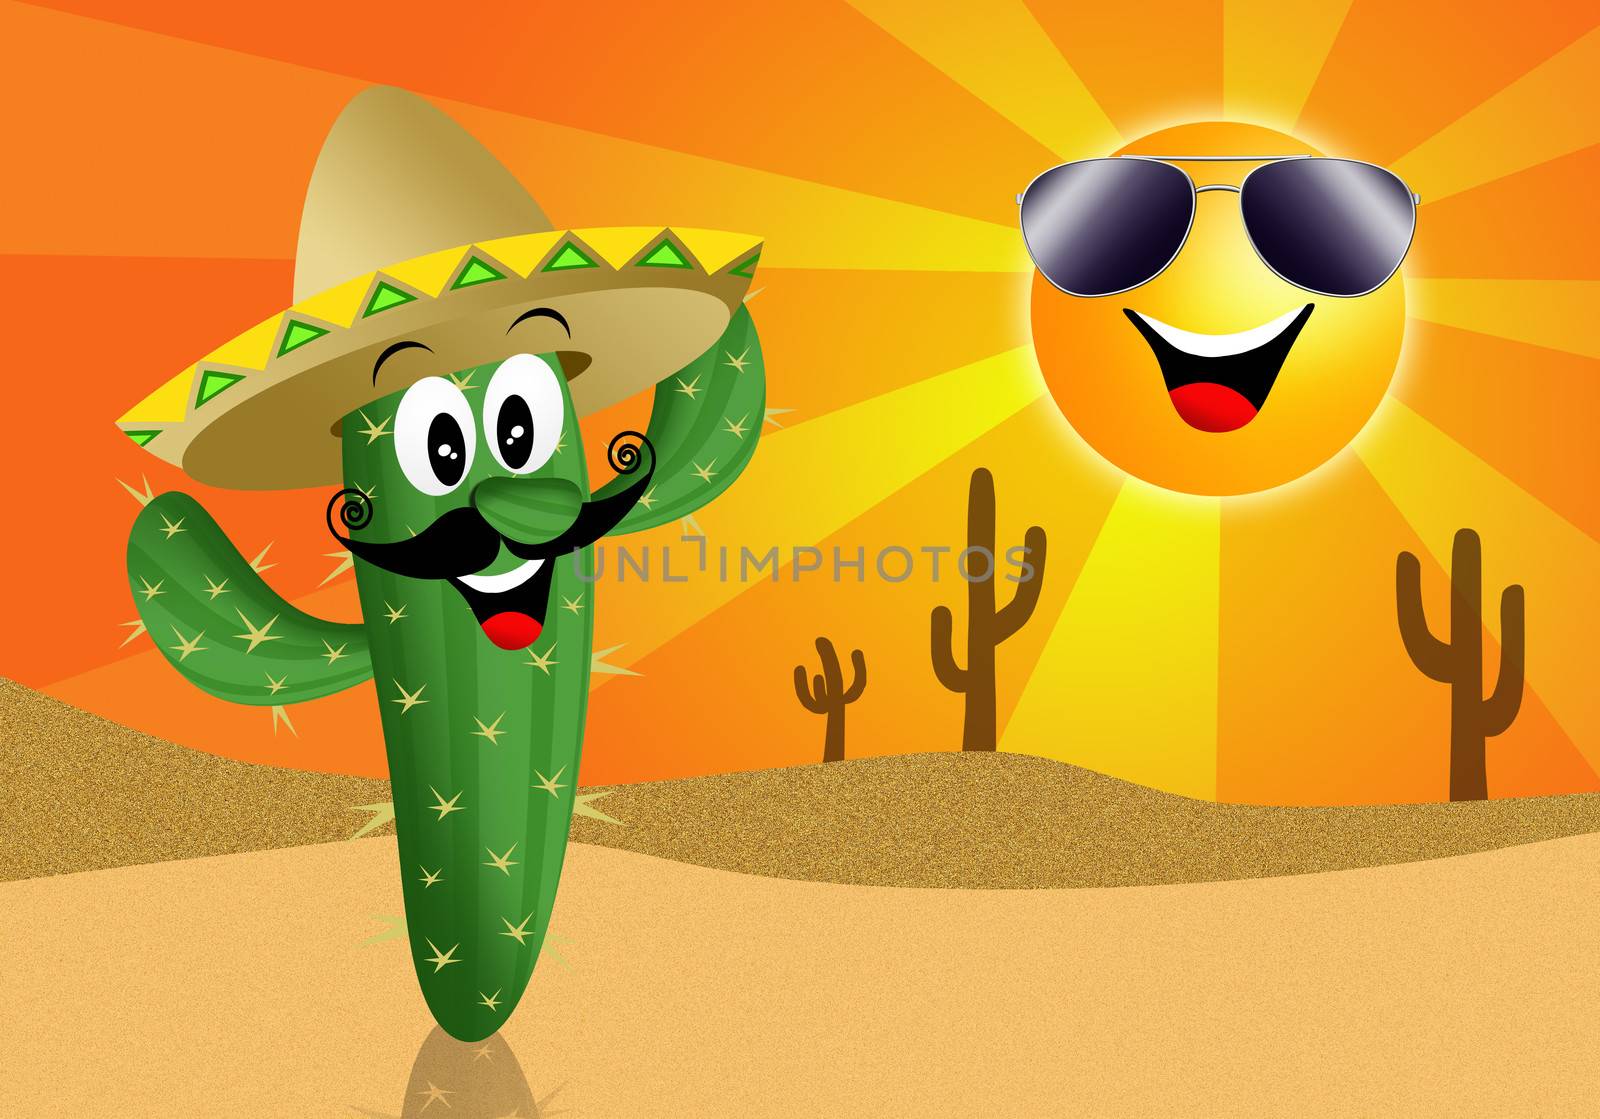 Cactus cartoon with sun